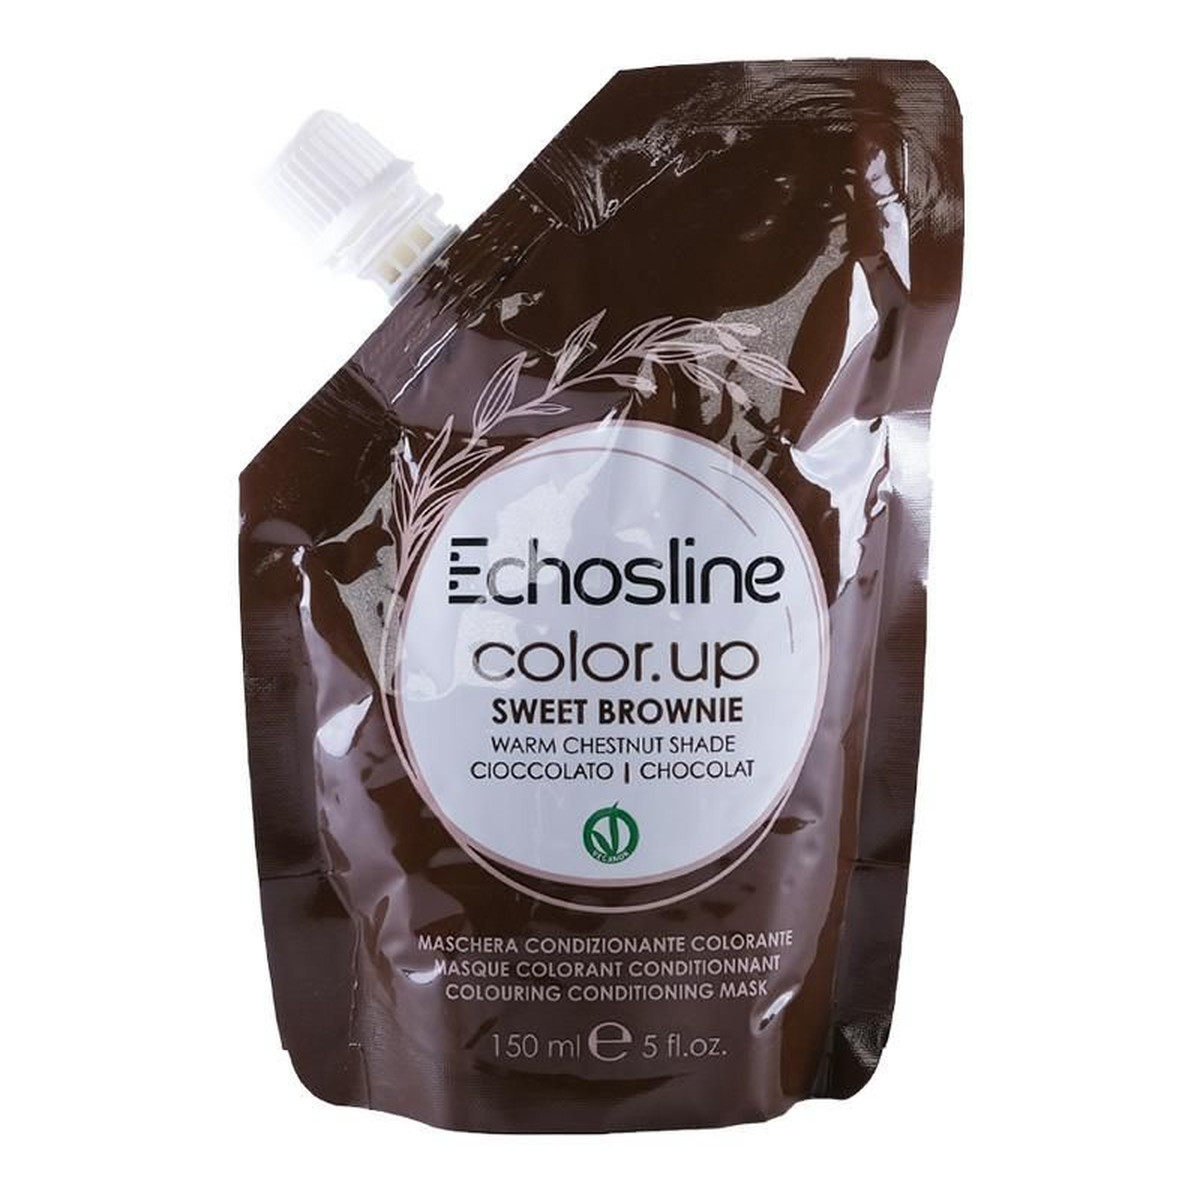 Echosline Color.up colouring conditioning mask maska koloryzująca do włosów sweet brownie 150ml